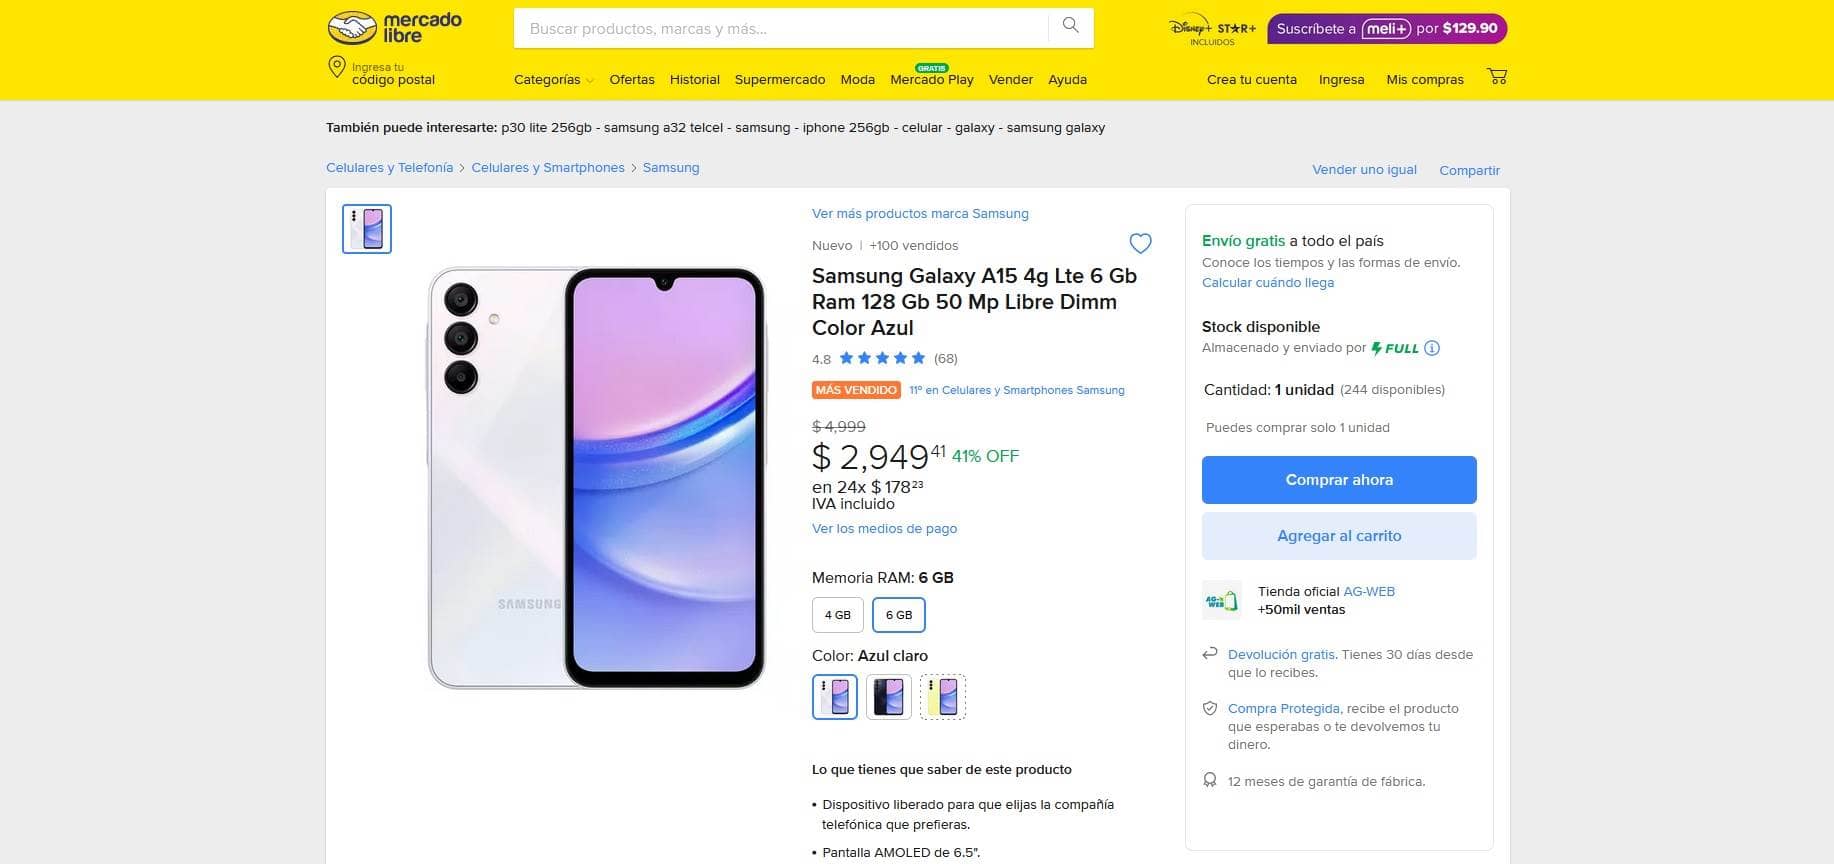 Características y precio del smartphone Samsung Galaxy A15